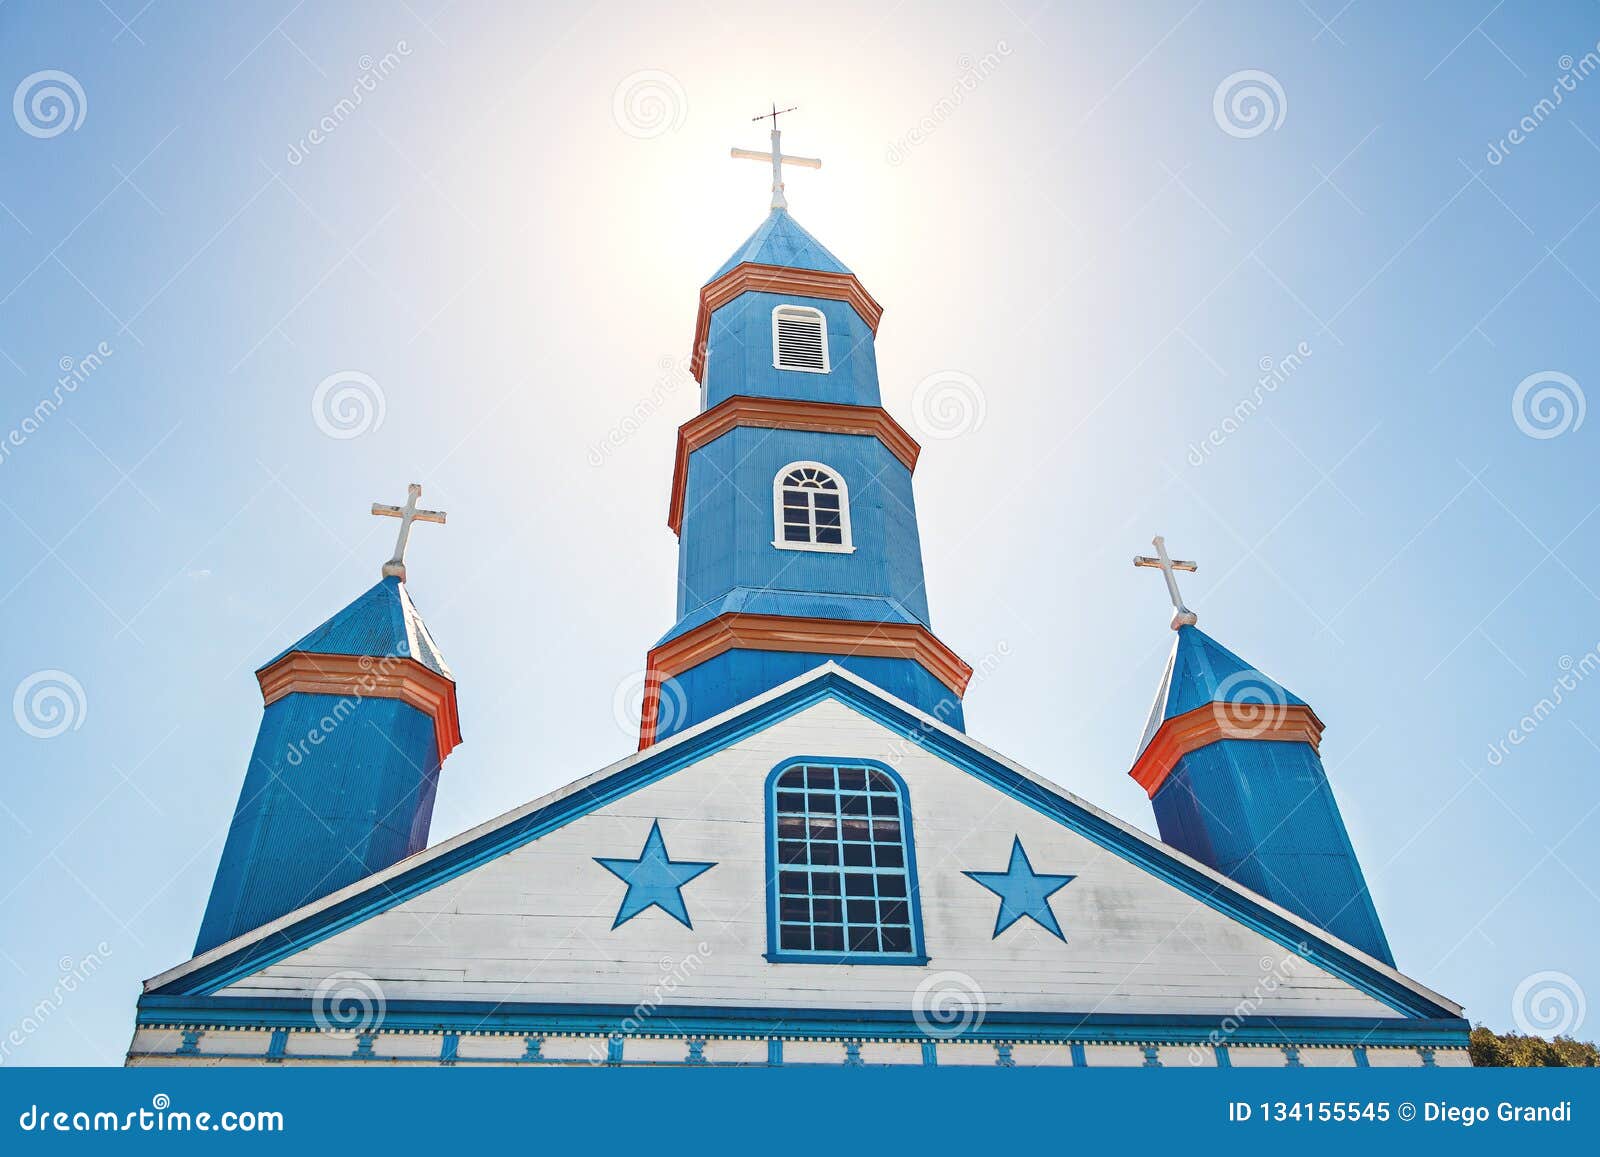 tenaun church - tenaun, chiloe island, chile